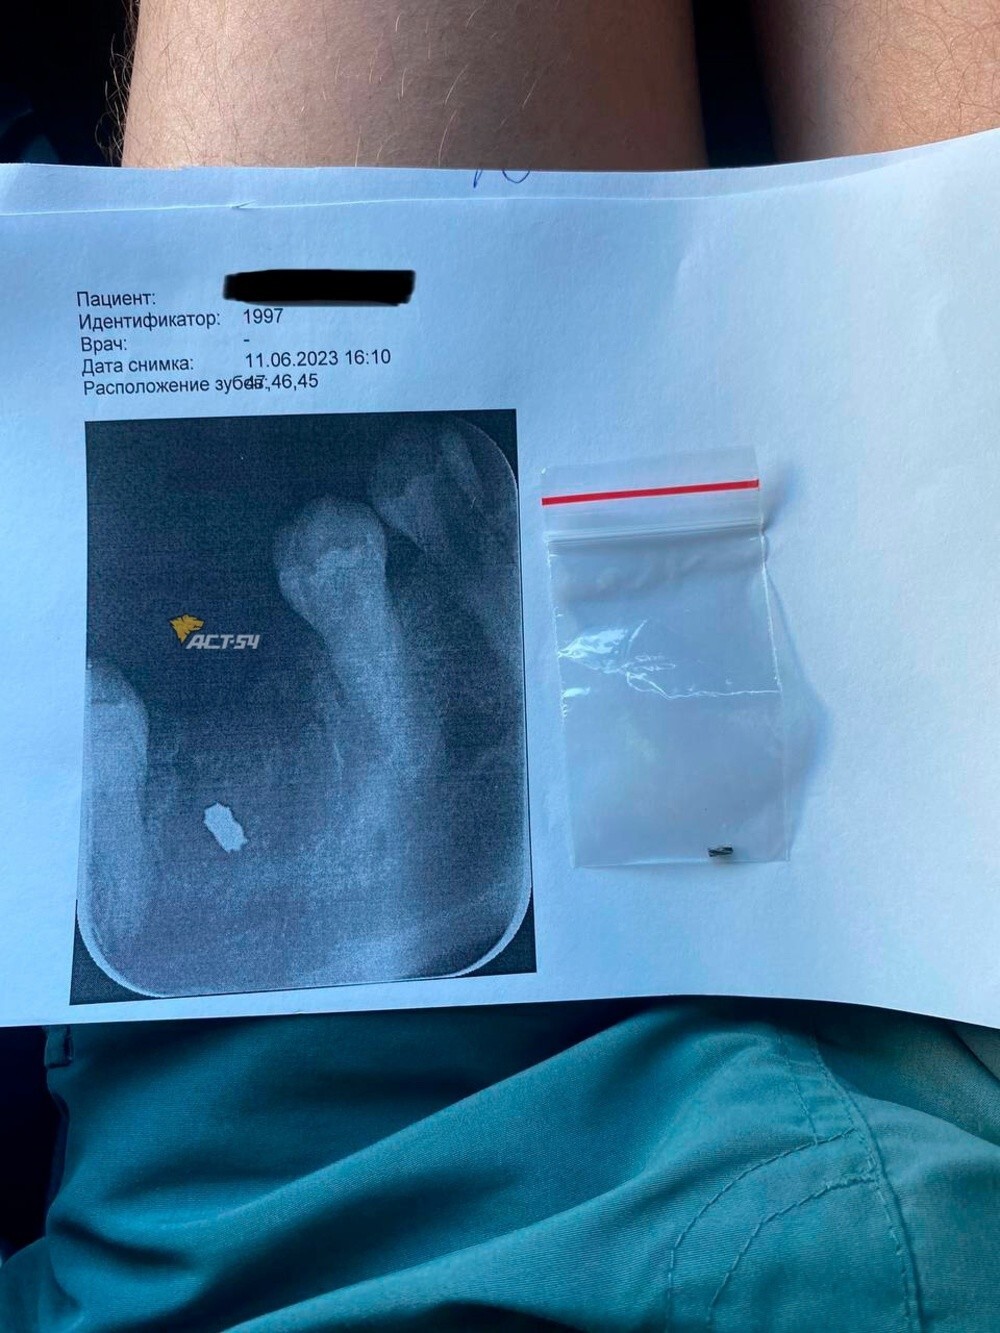 Стоматолог из Новосибирска забыл в челюсти пациентки часть сверла от бормашины